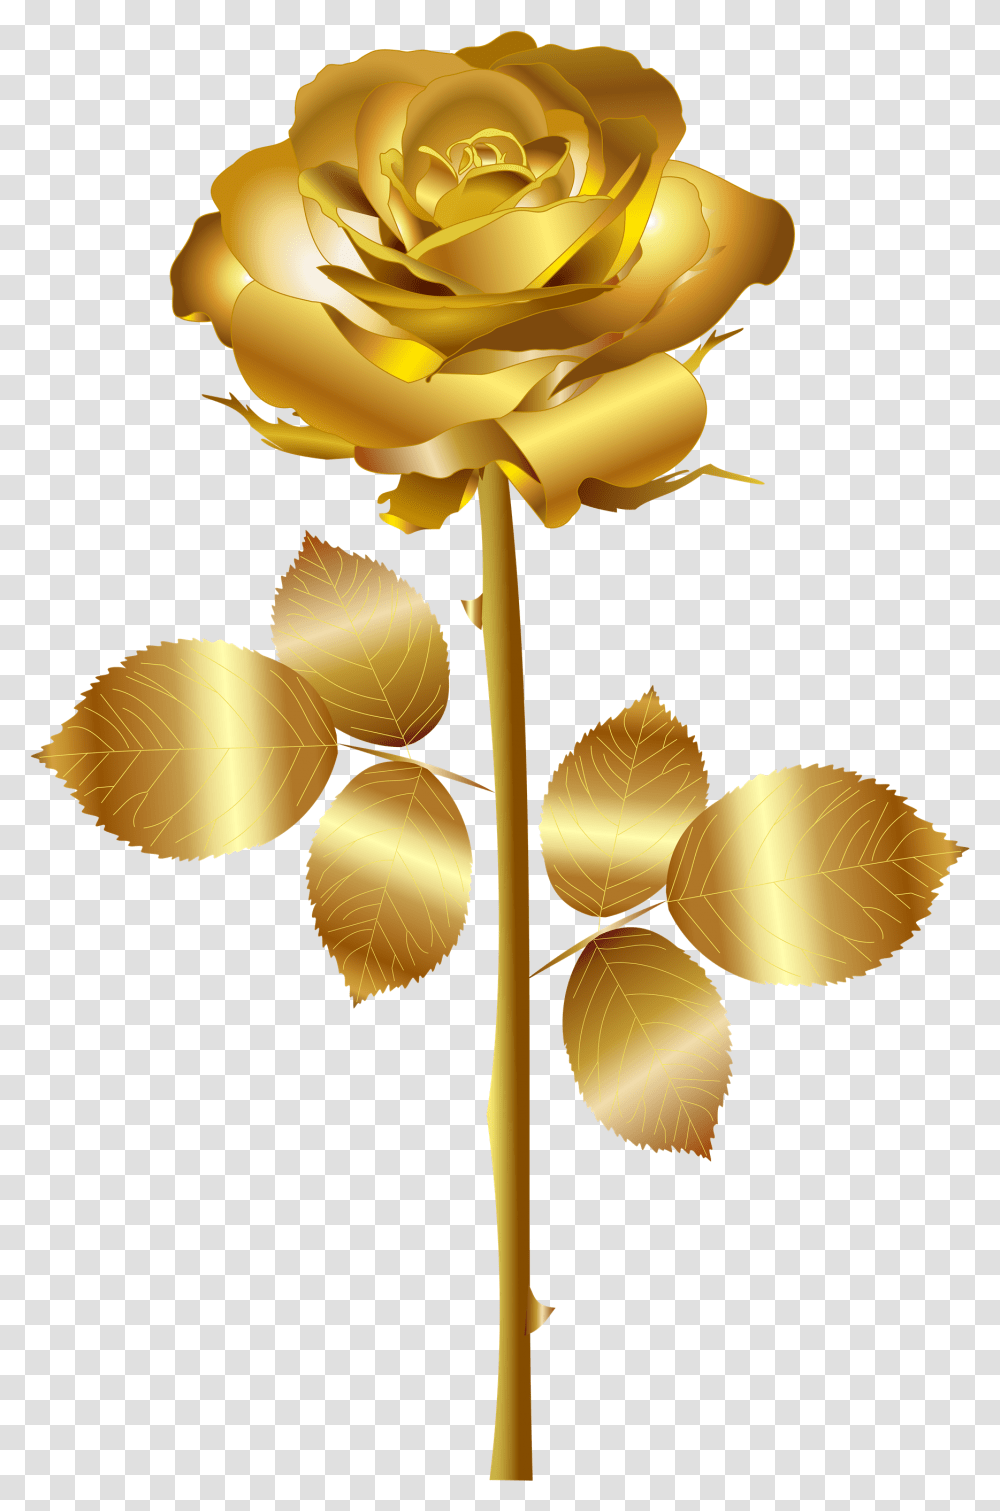 Golden Rose High Quality Image Gold Rose No Background, Plant, Flower, Blossom, Petal Transparent Png